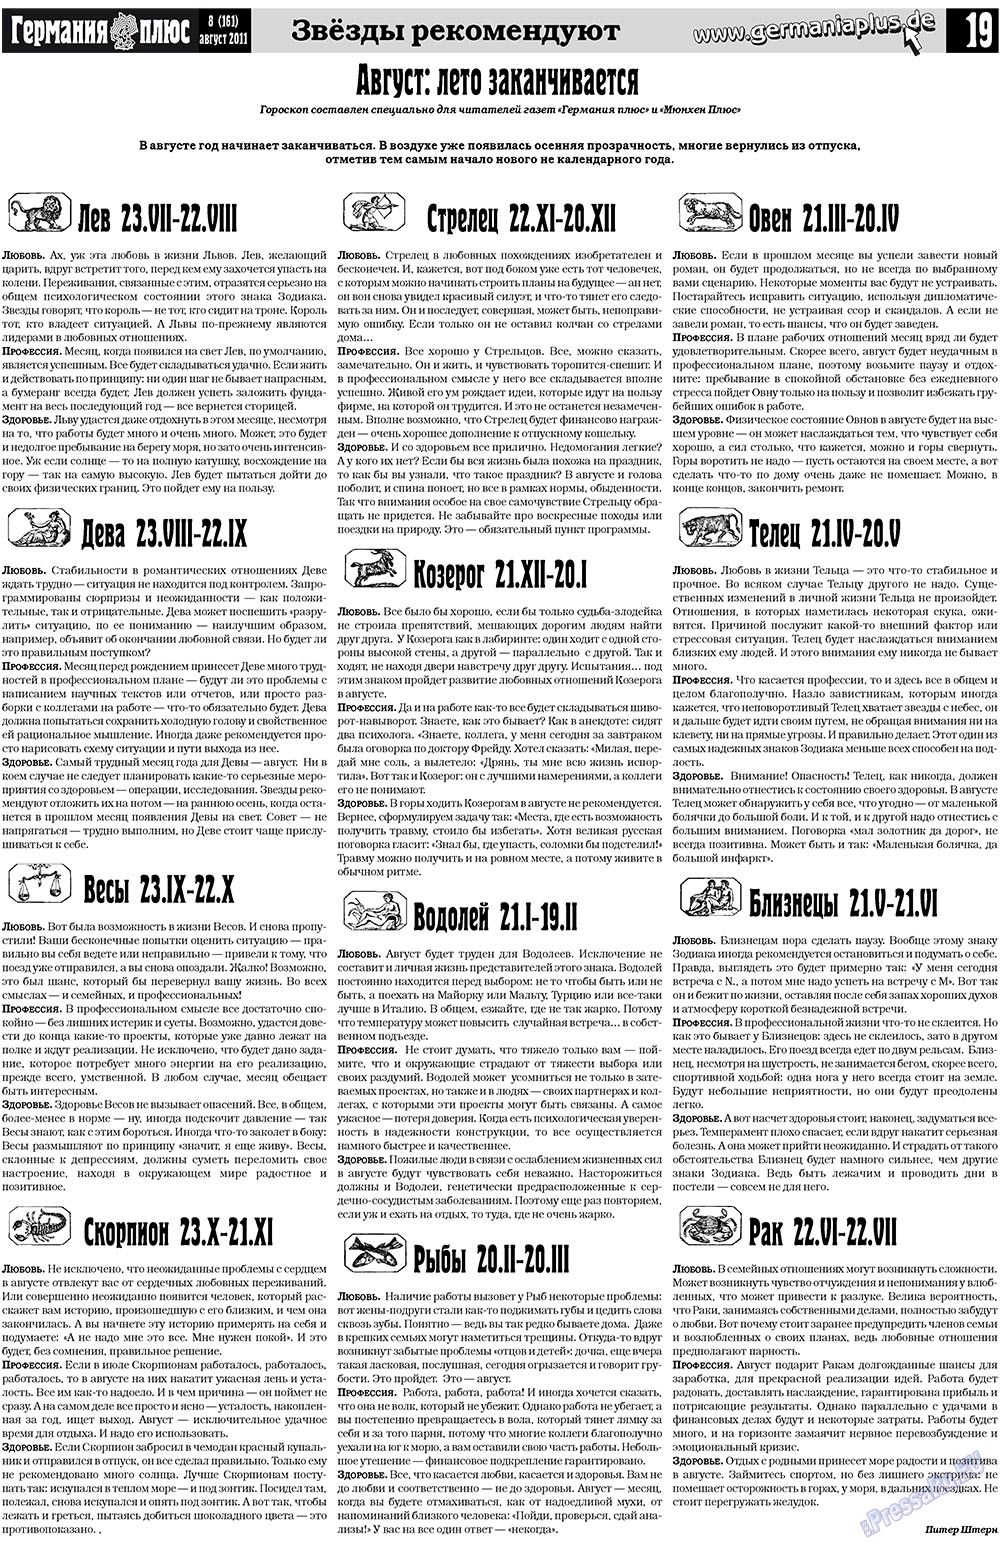 Германия плюс (газета). 2011 год, номер 8, стр. 19